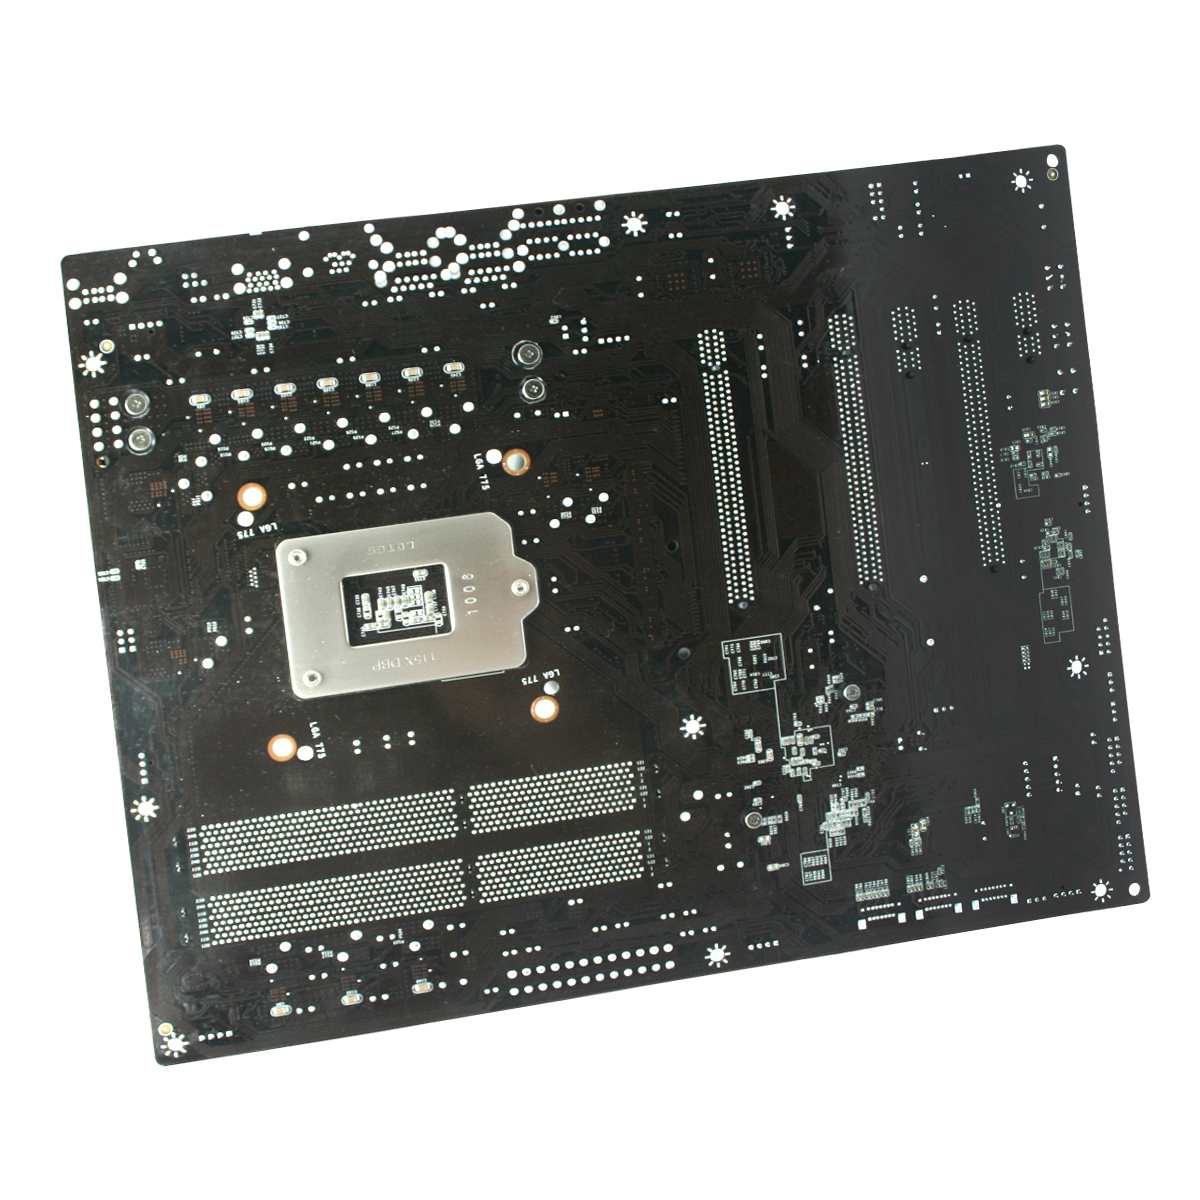 Immagine pubblicata in relazione al seguente contenuto: EVGA annuncia la motherboard P67 SLI per cpu Intel Sandy Bridge | Nome immagine: news14522_3.jpg